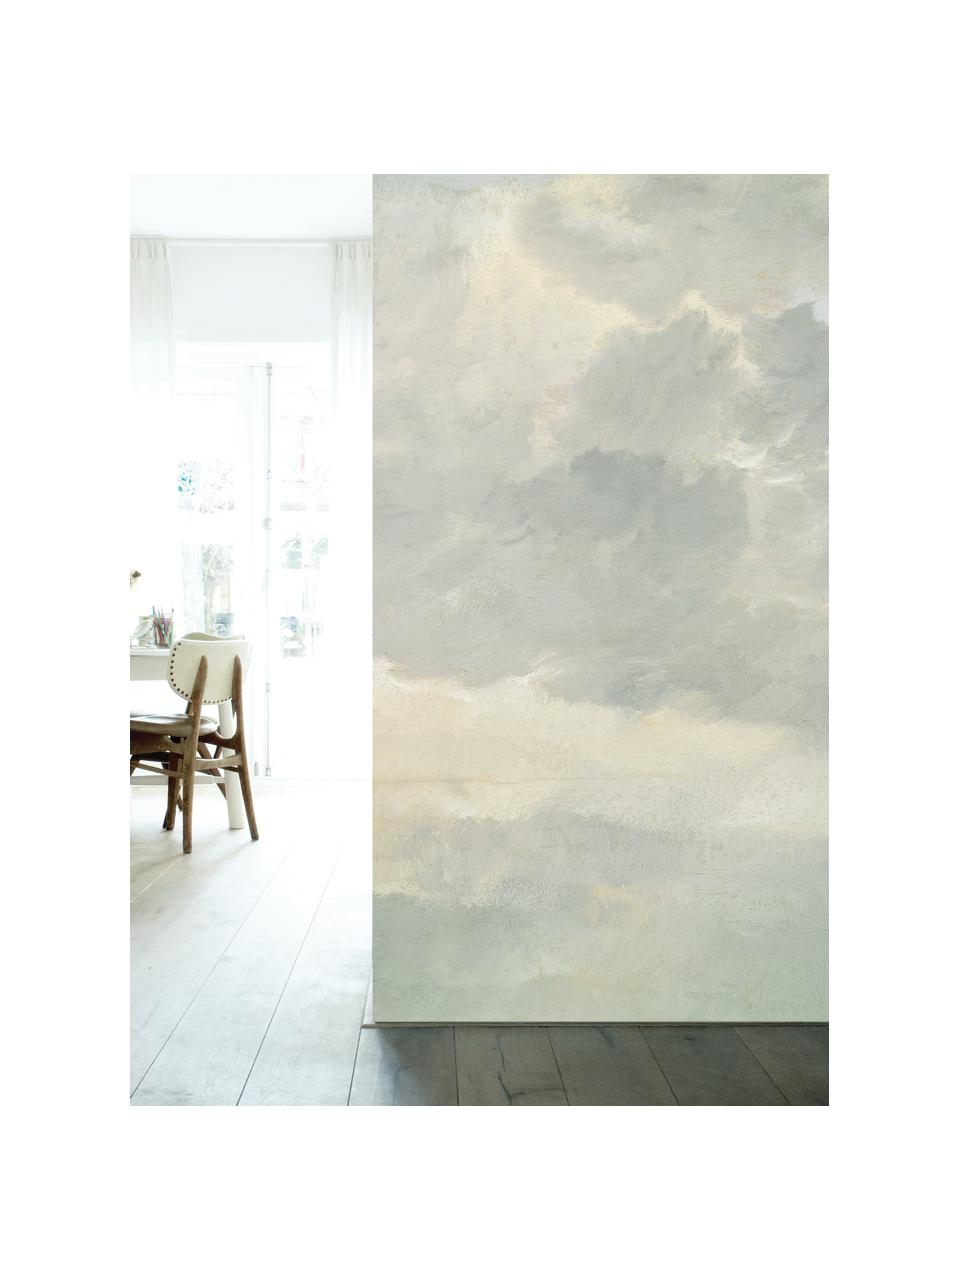 Fototapete Golden Age Clouds, Vlies, umweltfreundlich und biologisch abbaubar, Grau, Beige, matt, B 292 x H 280 cm